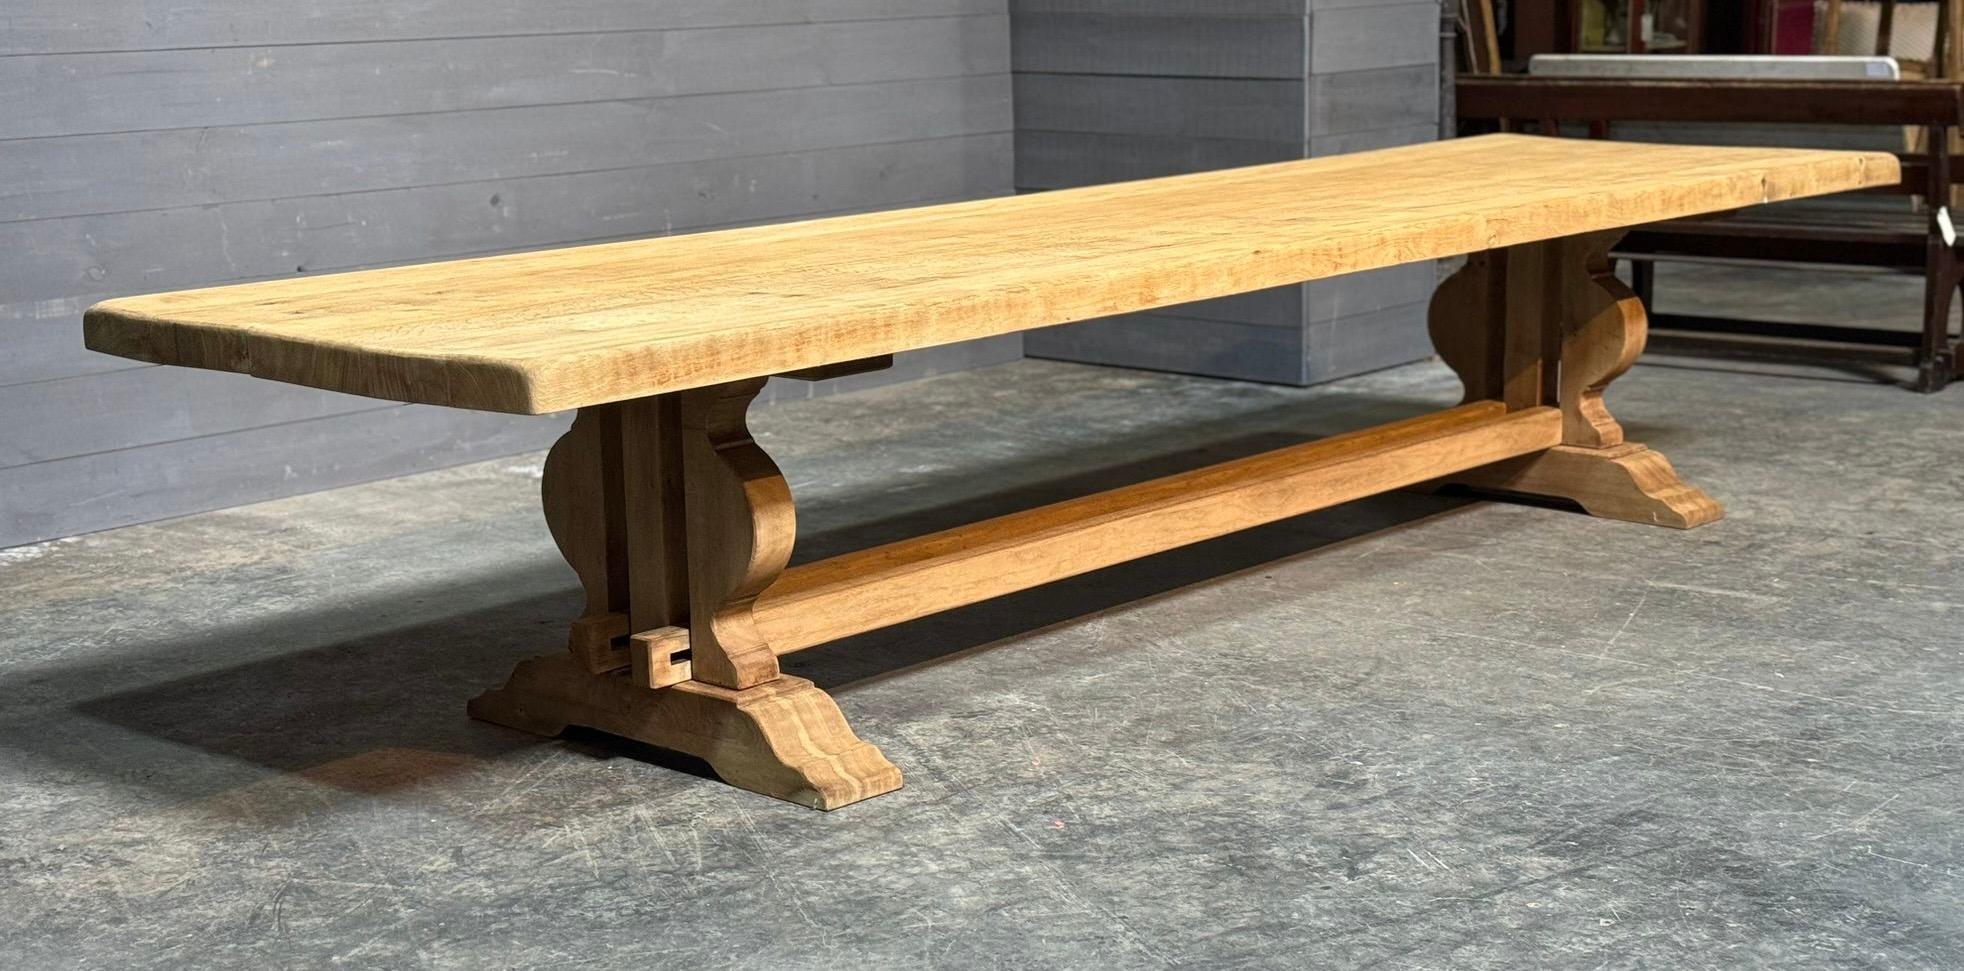 Wir freuen uns sehr, den größten French Trestle Solid Oak Farmhouse Dining Table anbieten zu können, den wir je gesehen haben. Mit einer Länge von 4 Metern und einer Tiefe von 106 cm ist dieser Tisch unglaublich und die Platte ist unglaublich